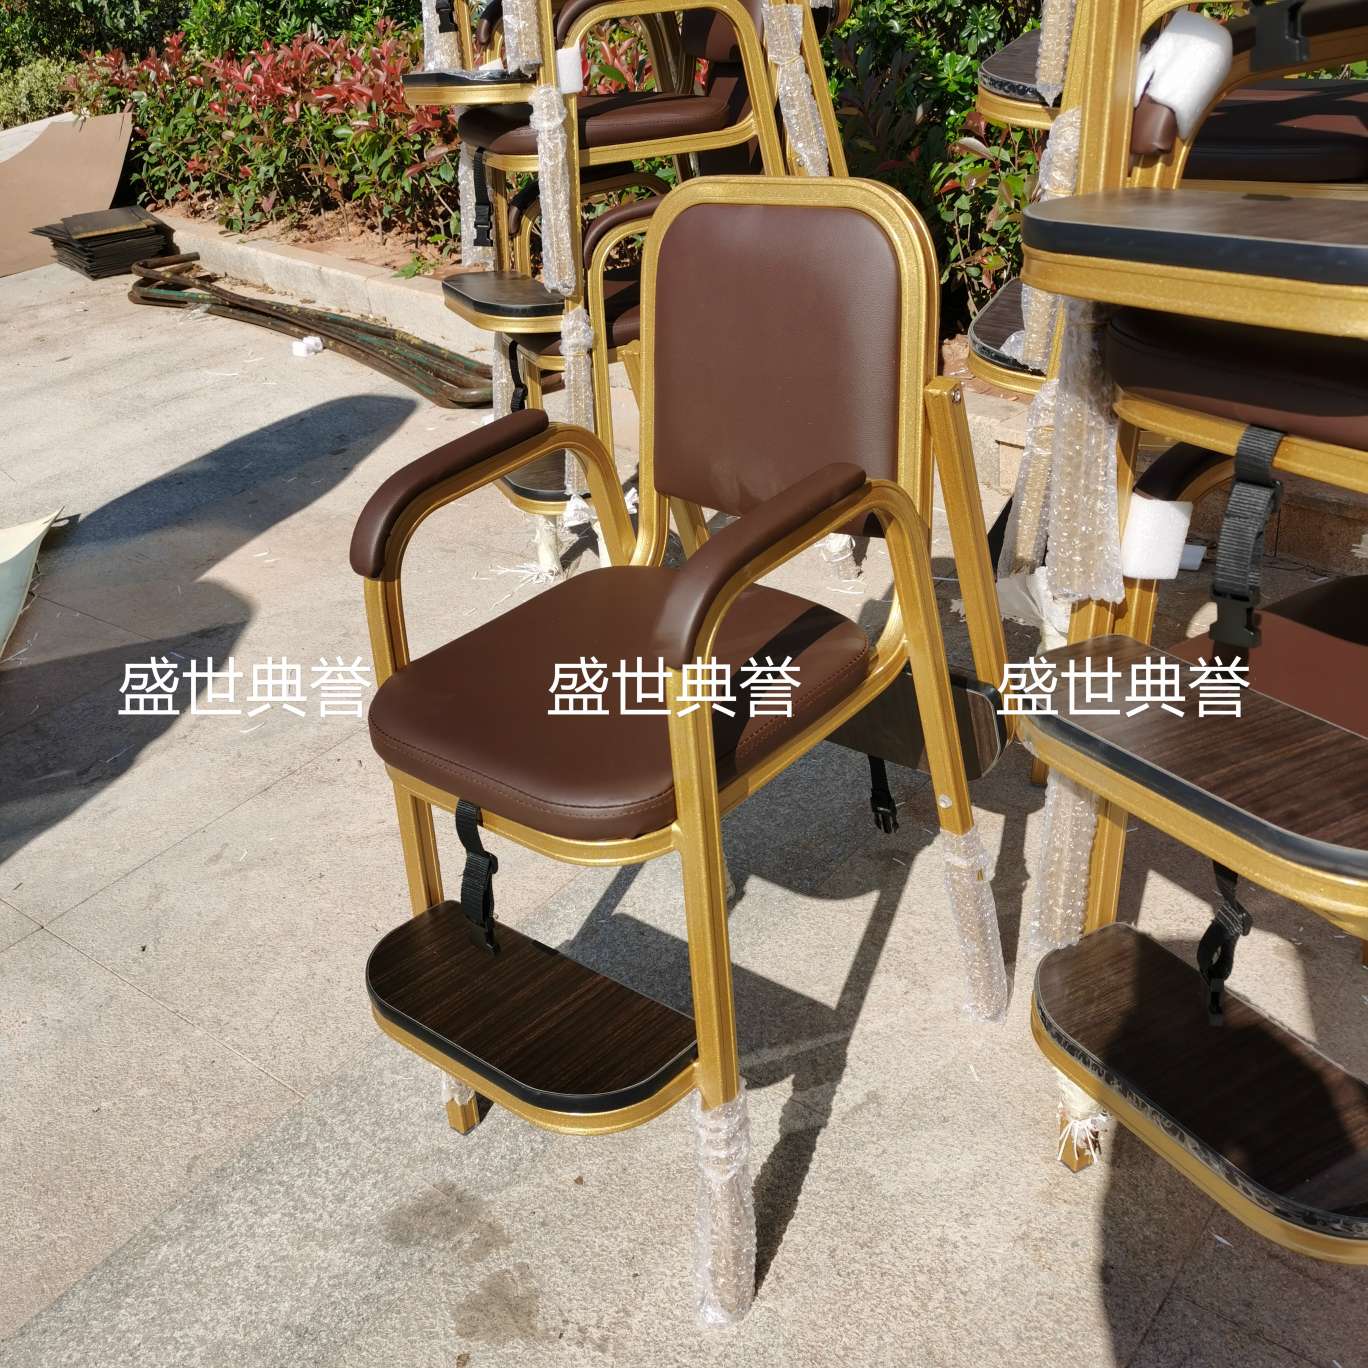 杭州国际宴会中心宝宝餐椅酒店宴会厅铝合金宝宝椅餐厅包厢儿童椅白底实物图